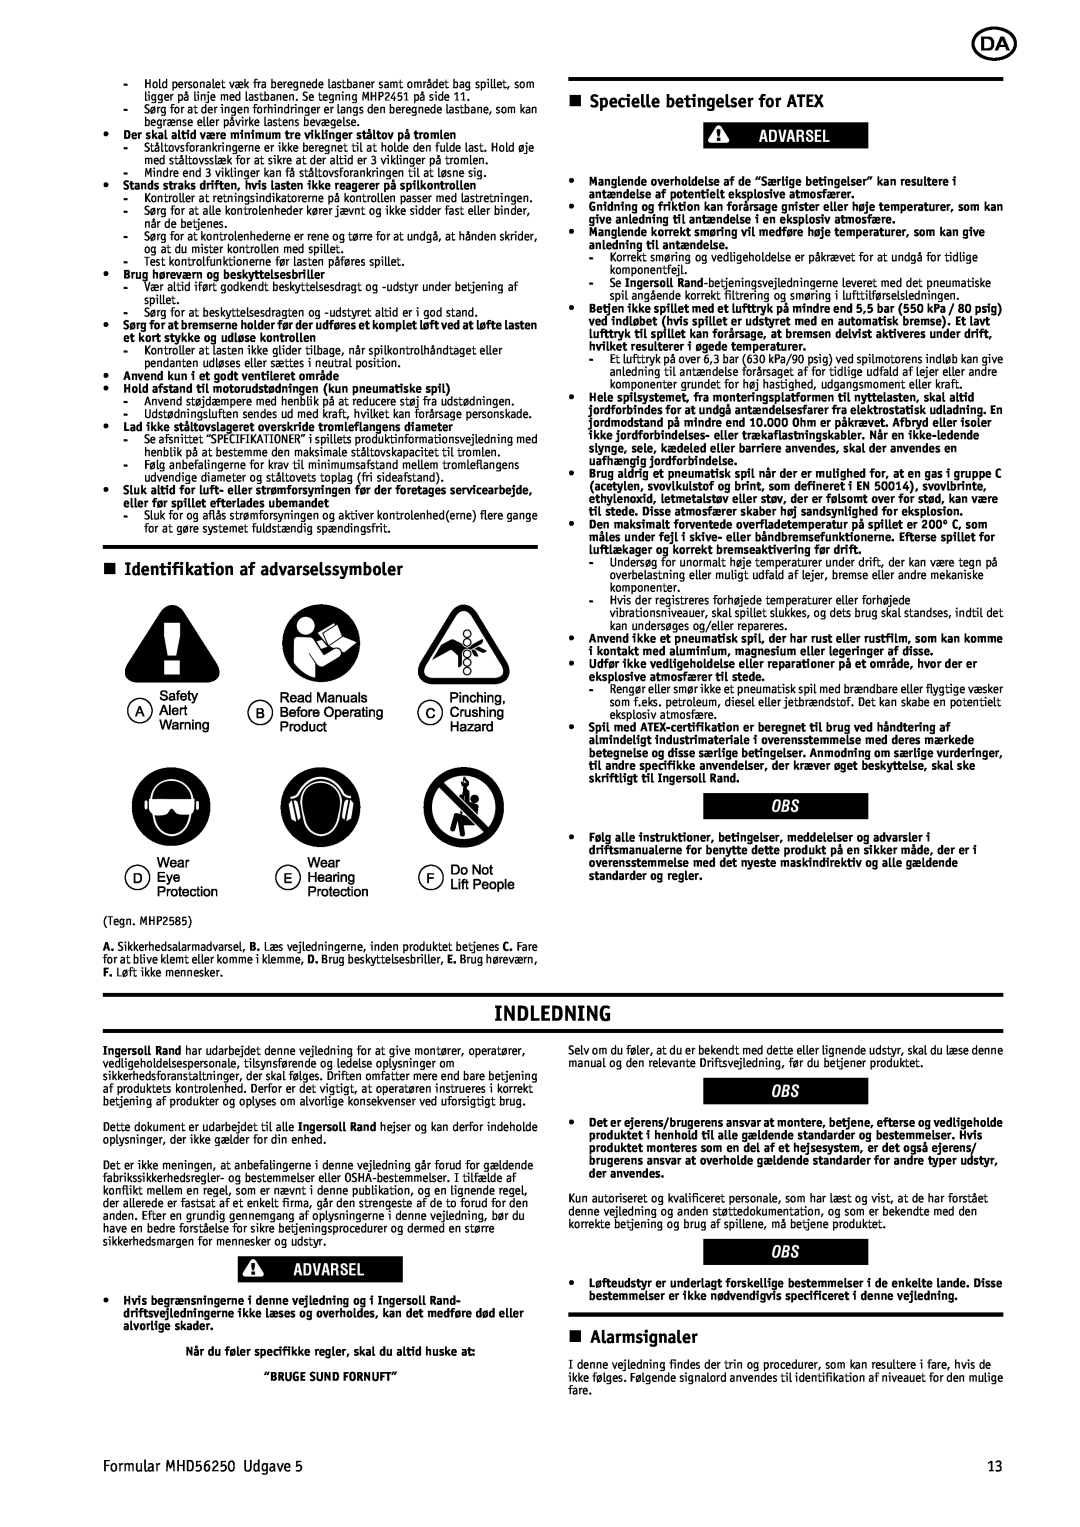 Ingersoll-Rand MHD56250 Indledning, n Identifikation af advarselssymboler, n Specielle betingelser for ATEX, Advarsel 